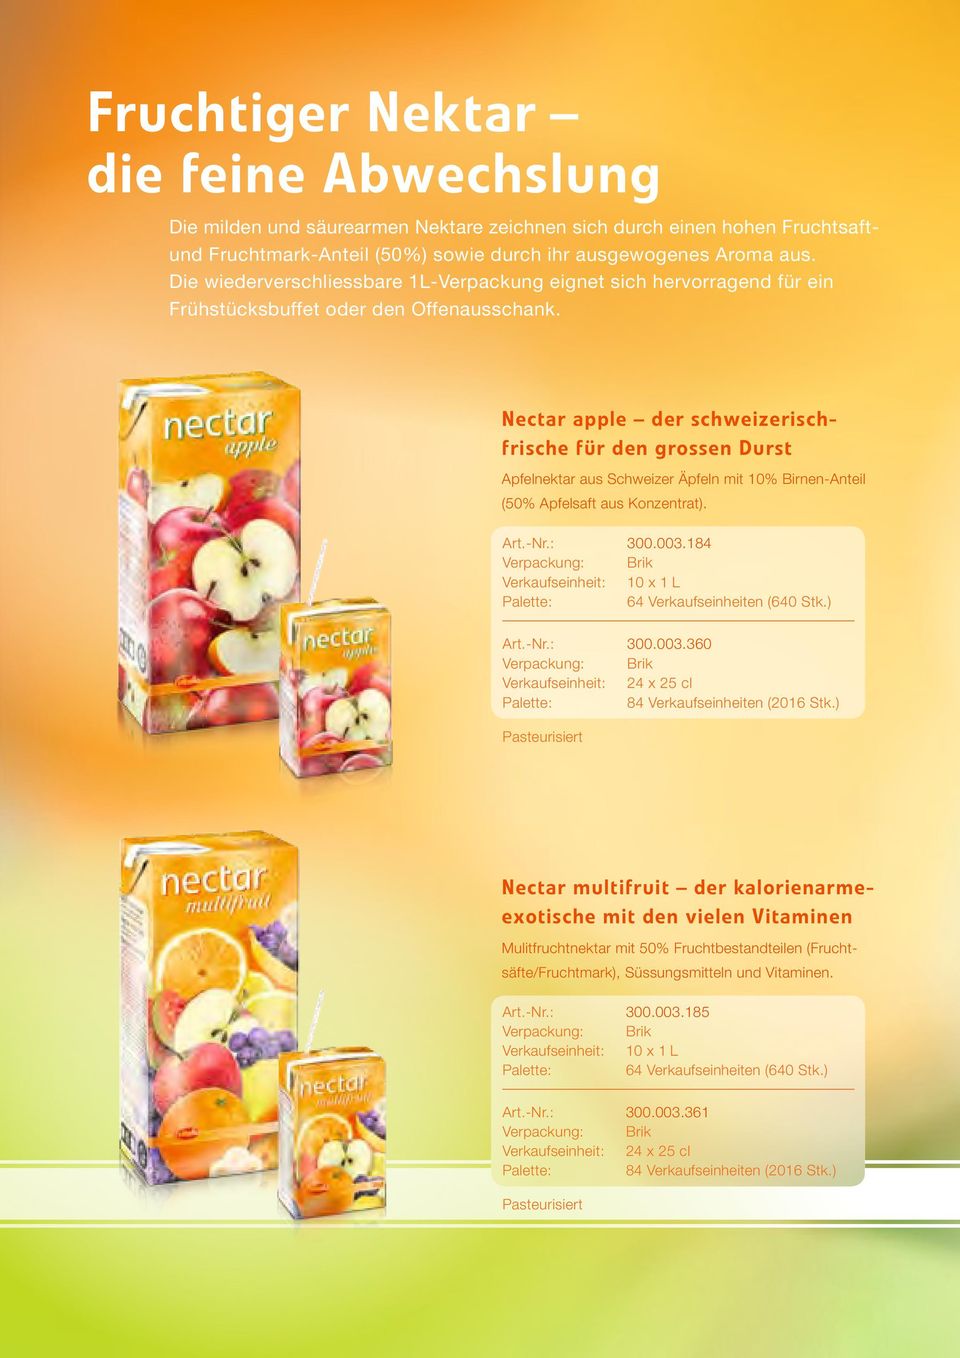 Nectar apple der schweizerischfrische für den grossen Durst Apfelnektar aus Schweizer Äpfeln mit 10% Birnen-Anteil (50% Apfelsaft aus Konzentrat). Art.-Nr.: 300.003.